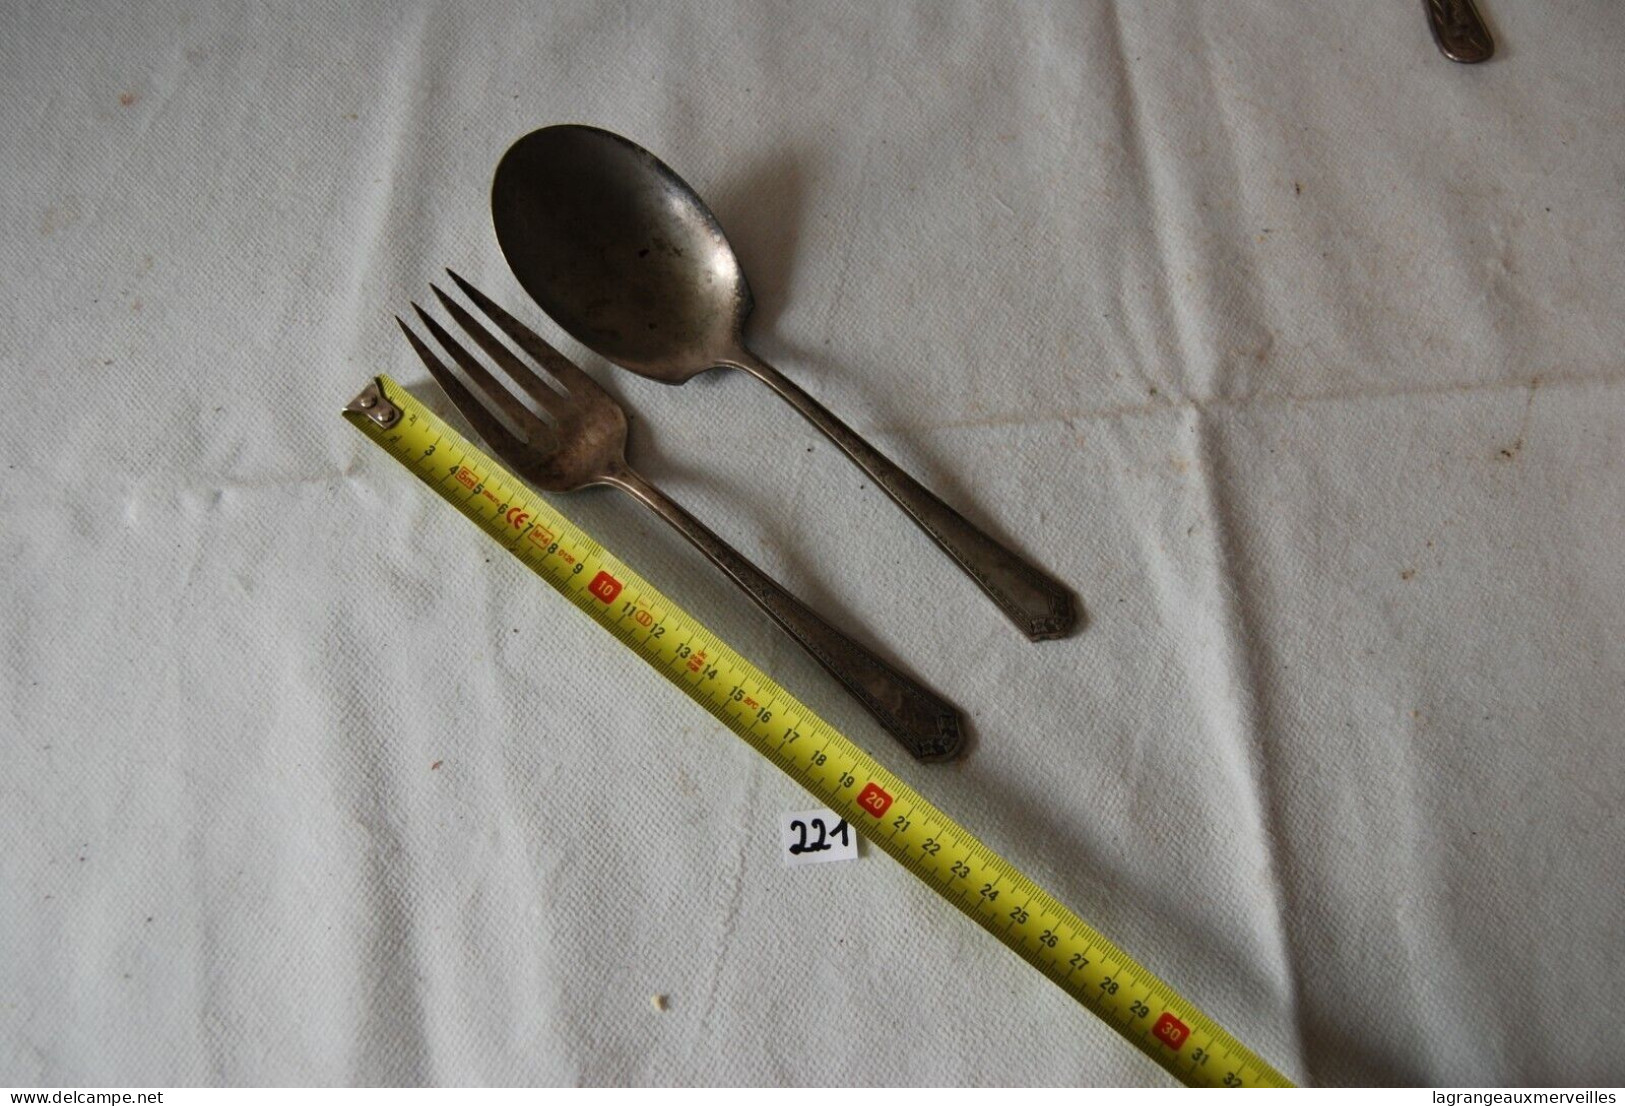 C221 Ancienne Cuillère Et Fourchette - Manche Travaillé - Spoons